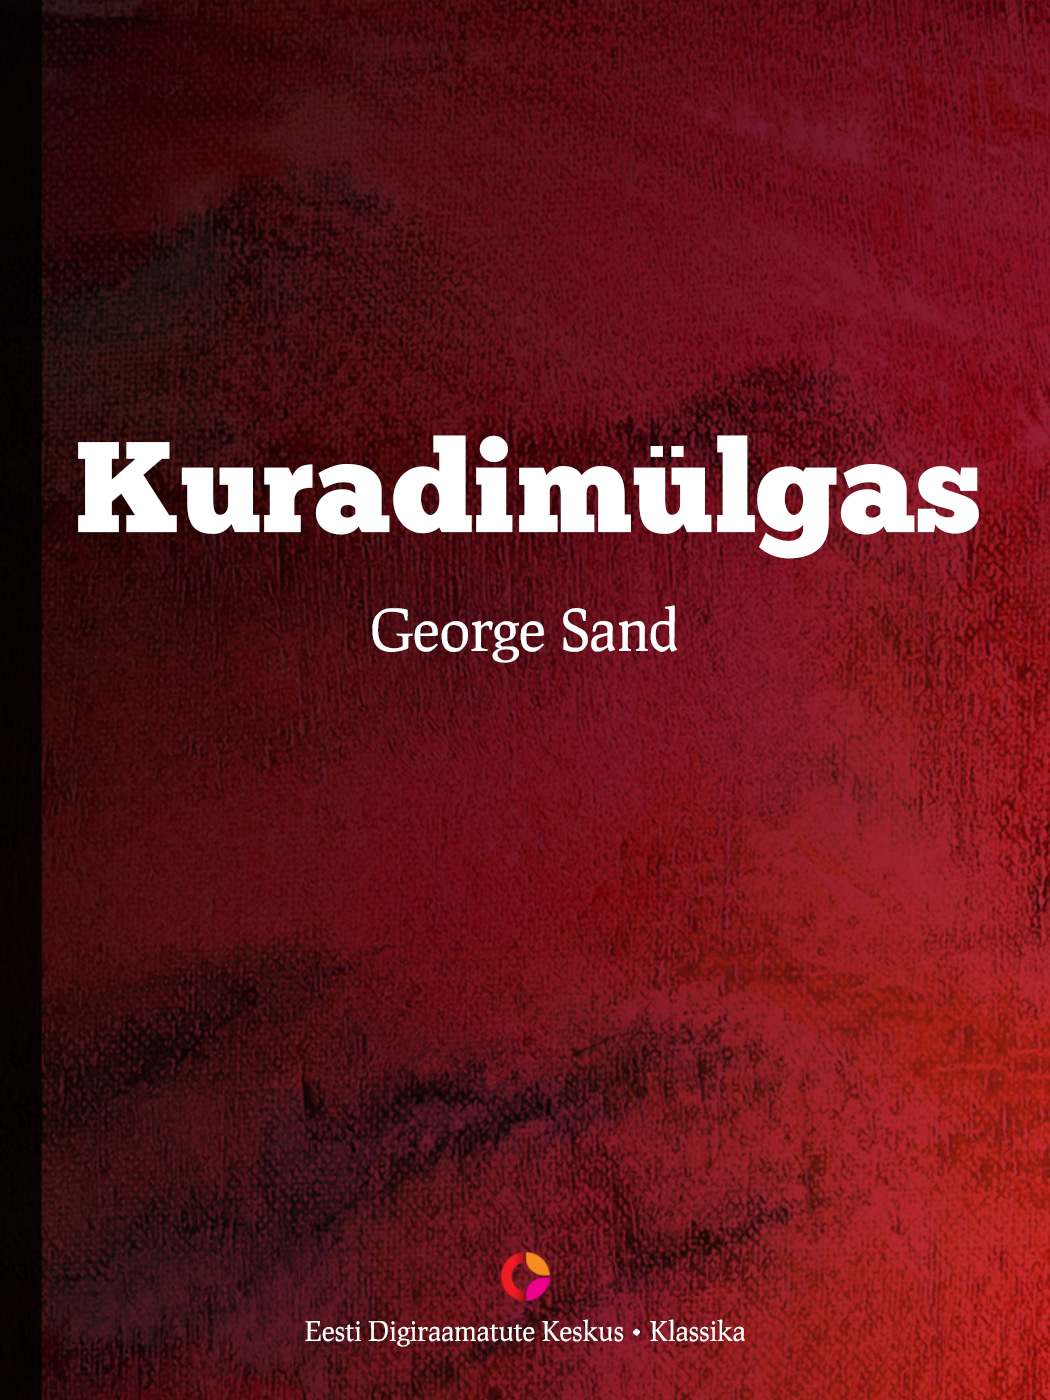 Книга Kuradimülgas из серии , созданная George Sand, может относится к жанру Зарубежная классика, Зарубежная старинная литература. Стоимость электронной книги Kuradimülgas с идентификатором 21184620 составляет 298.37 руб.